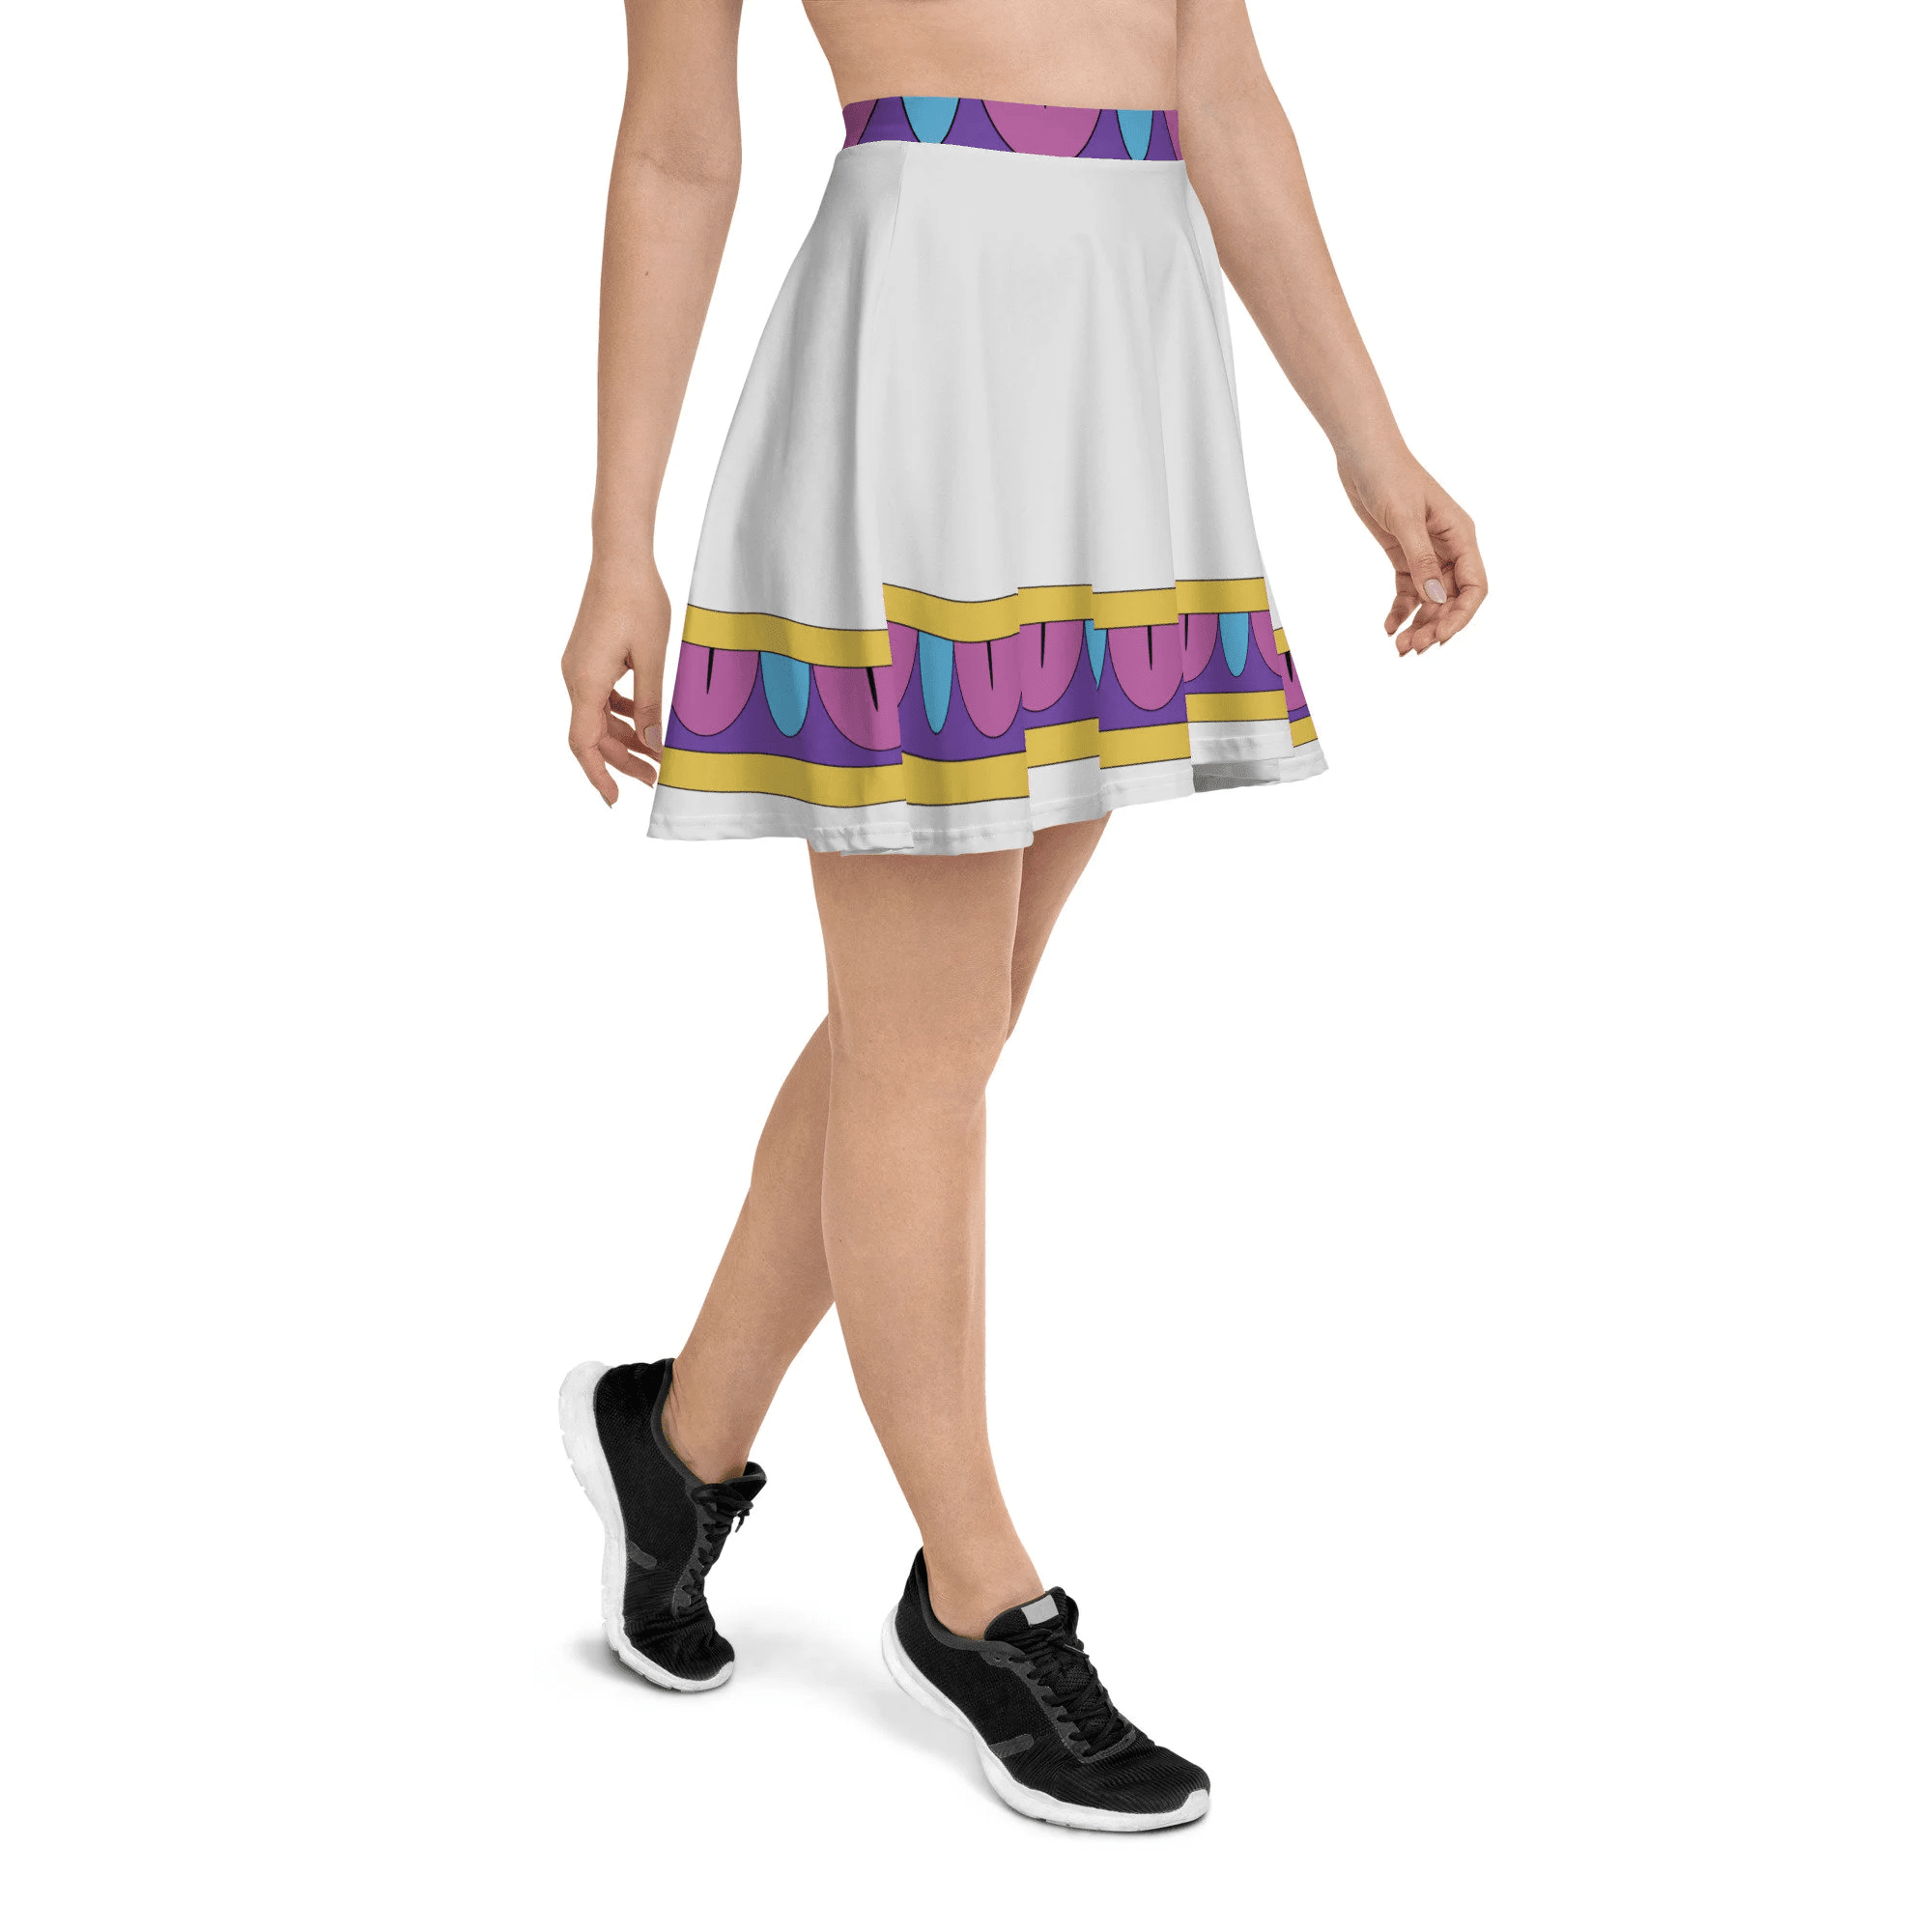 Enchanted Teapot Running Costume Skater Skirt